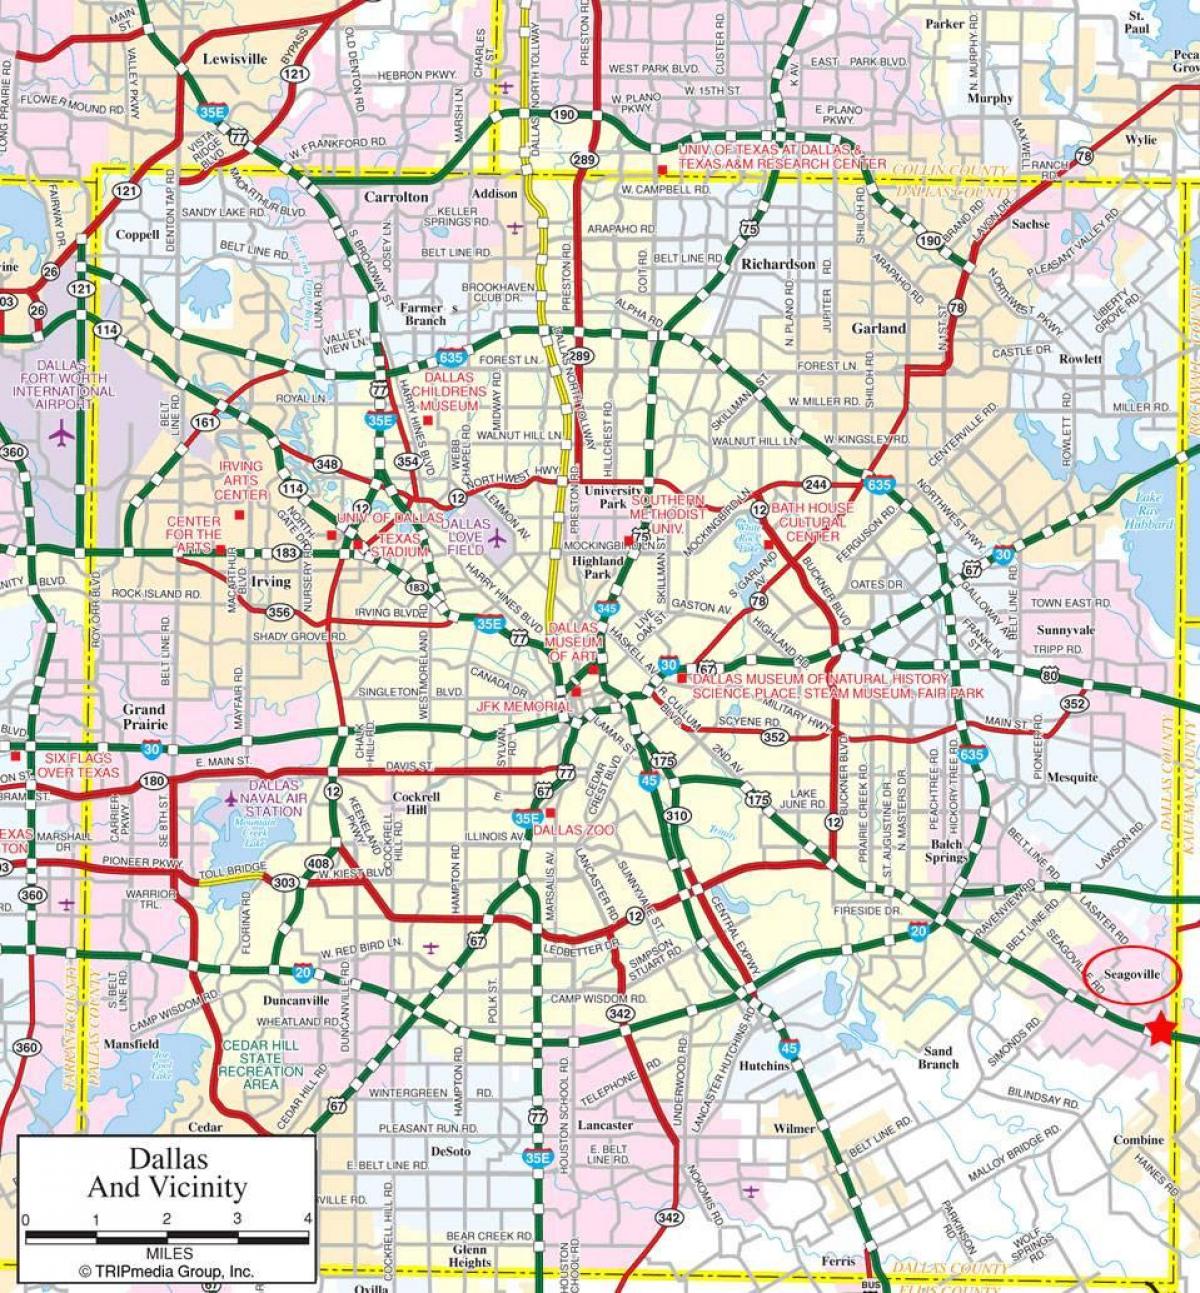 แผนที่ของ Dallas หมู่บ้านย่านชานเมืองต่าง